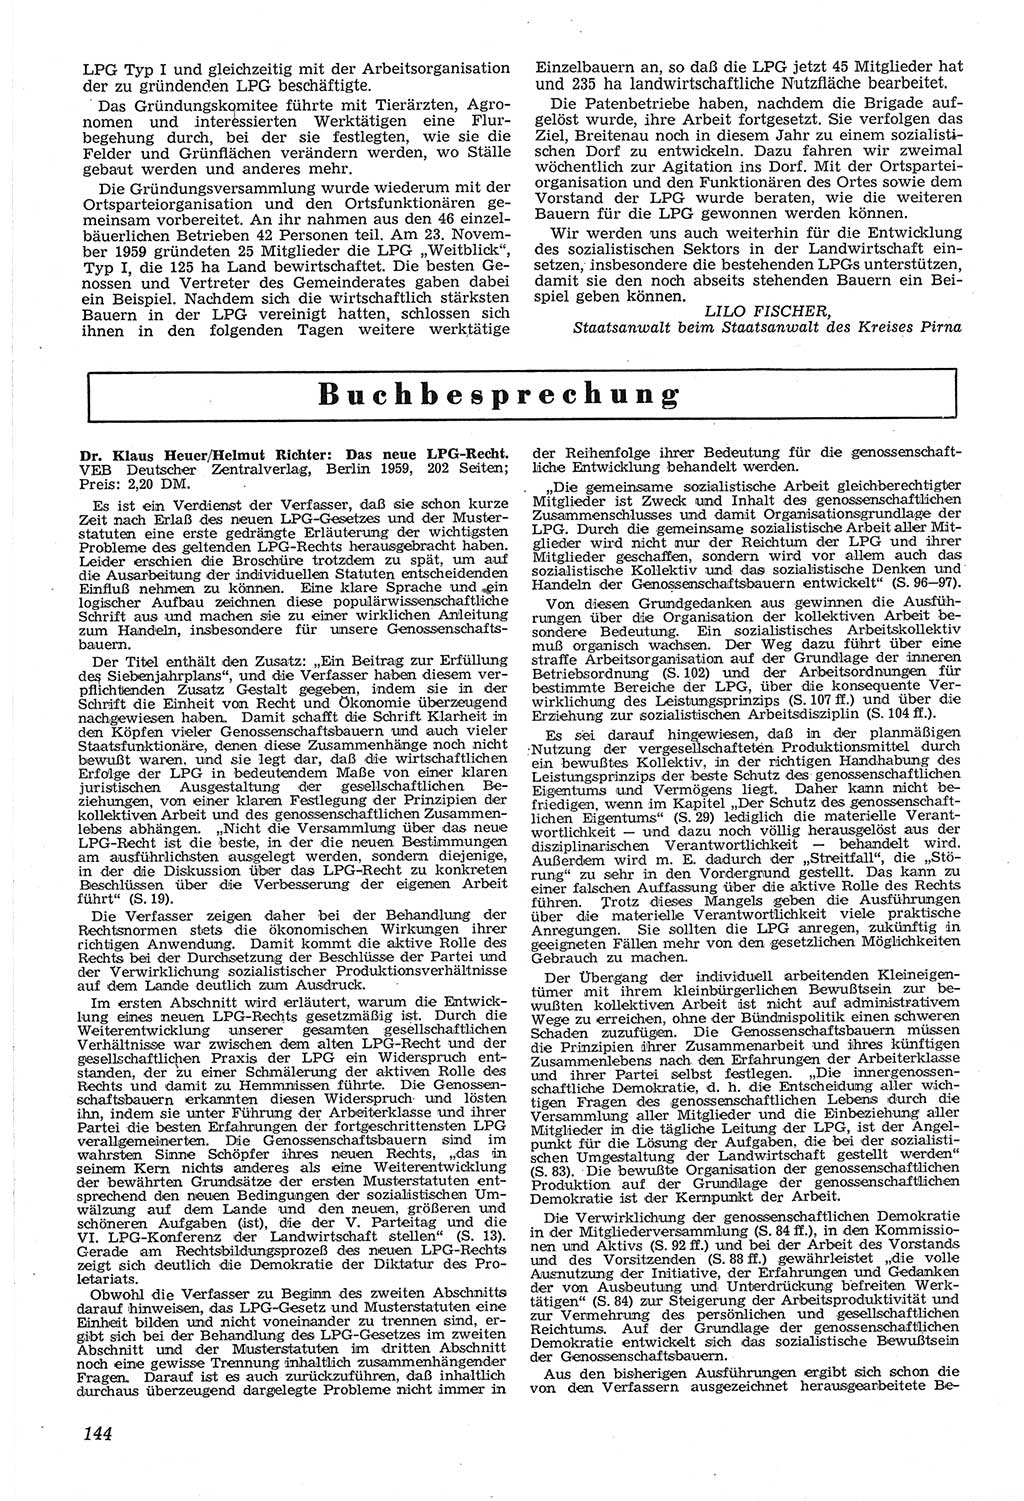 Neue Justiz (NJ), Zeitschrift für Recht und Rechtswissenschaft [Deutsche Demokratische Republik (DDR)], 14. Jahrgang 1960, Seite 144 (NJ DDR 1960, S. 144)